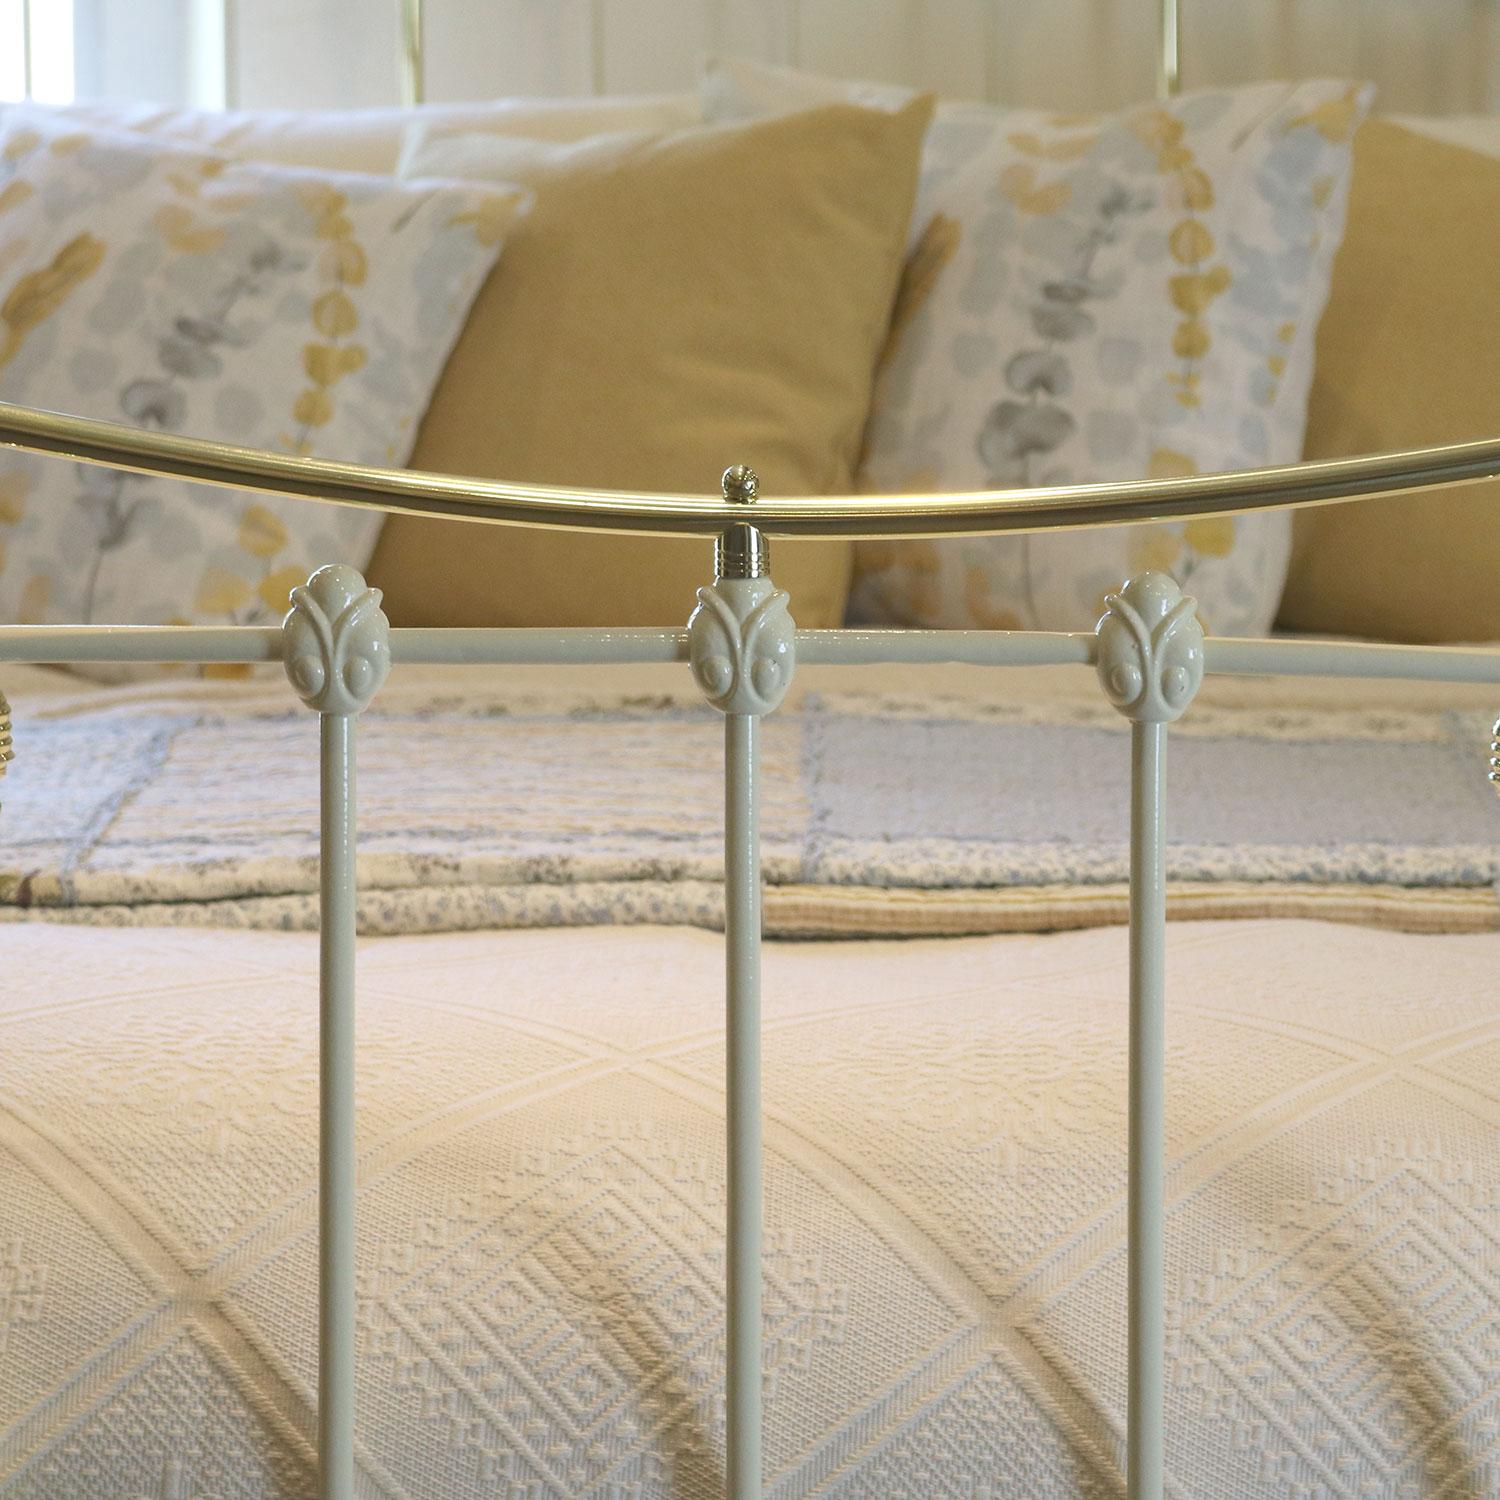 English Antique Iron Bed in Cream